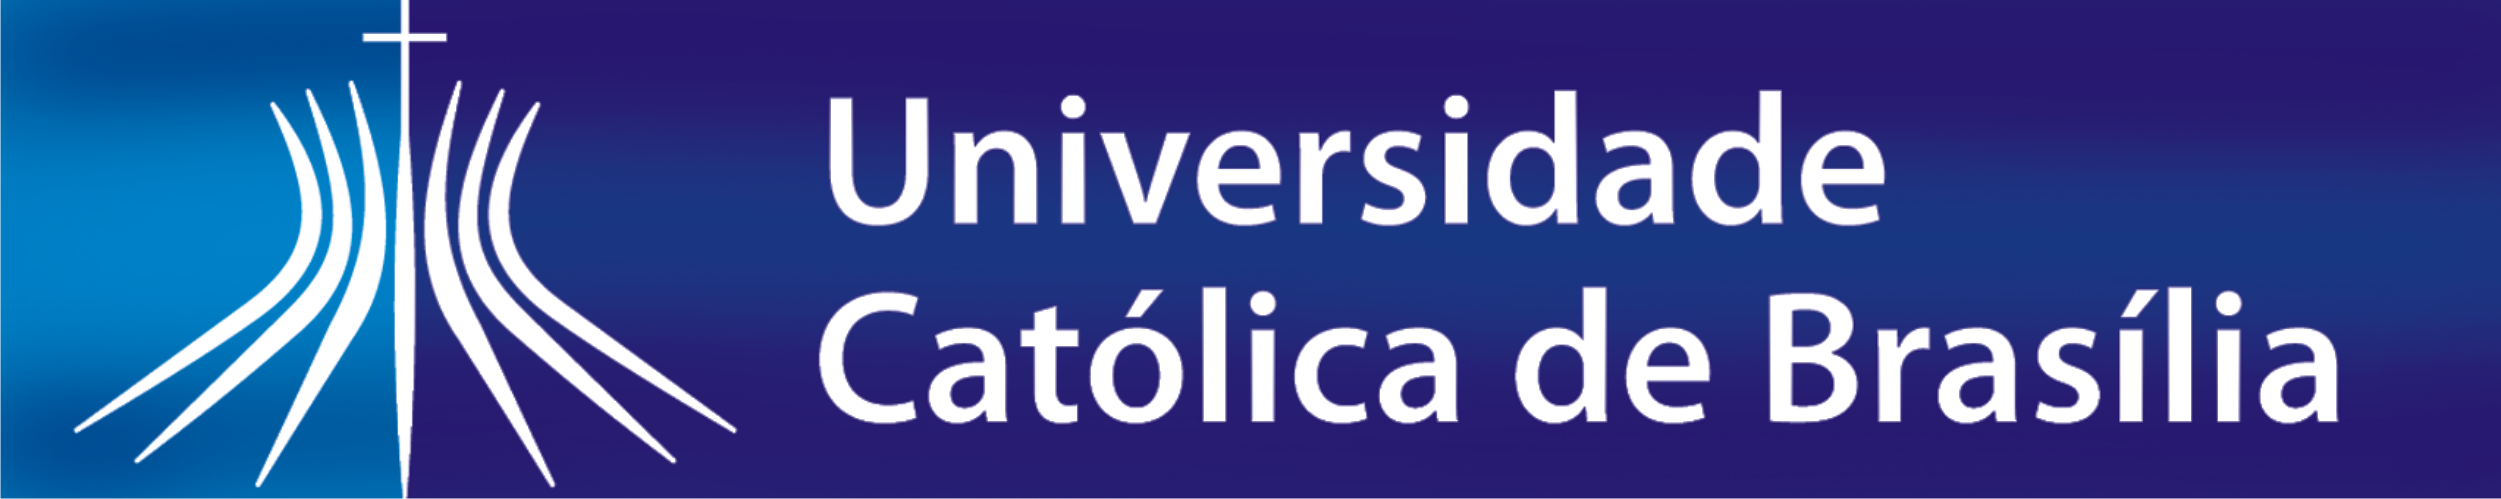 UCB - Universidade Católica de Brasília Logo photo - 1